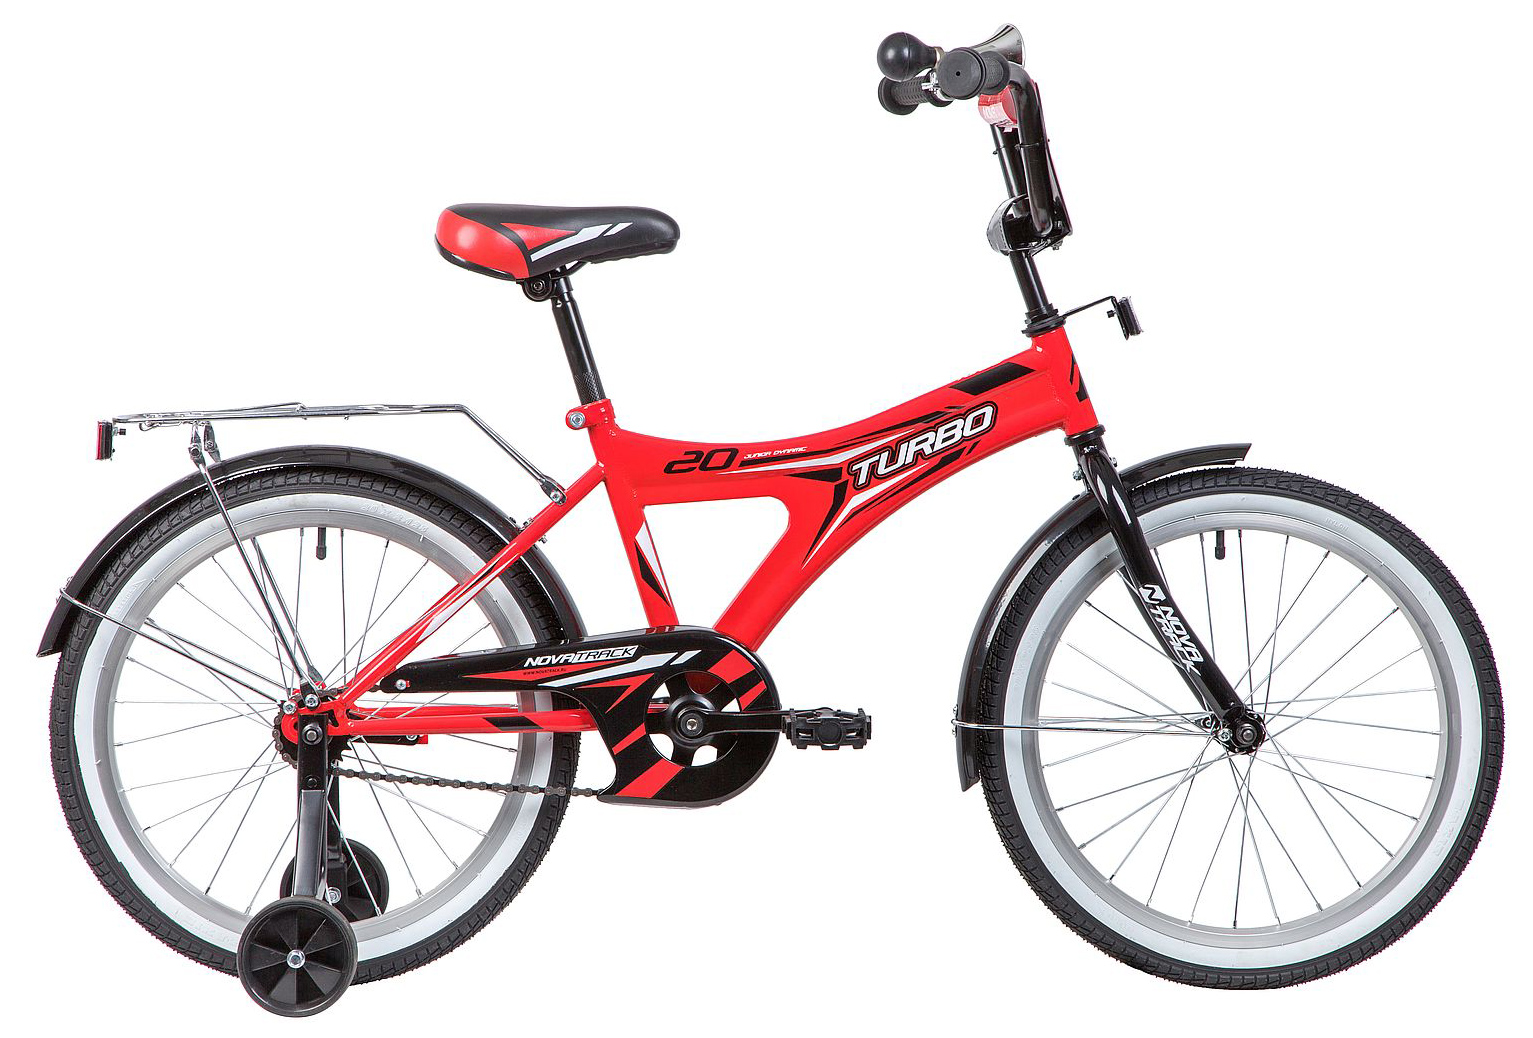  Отзывы о Детском велосипеде Novatrack Turbo 20 2019